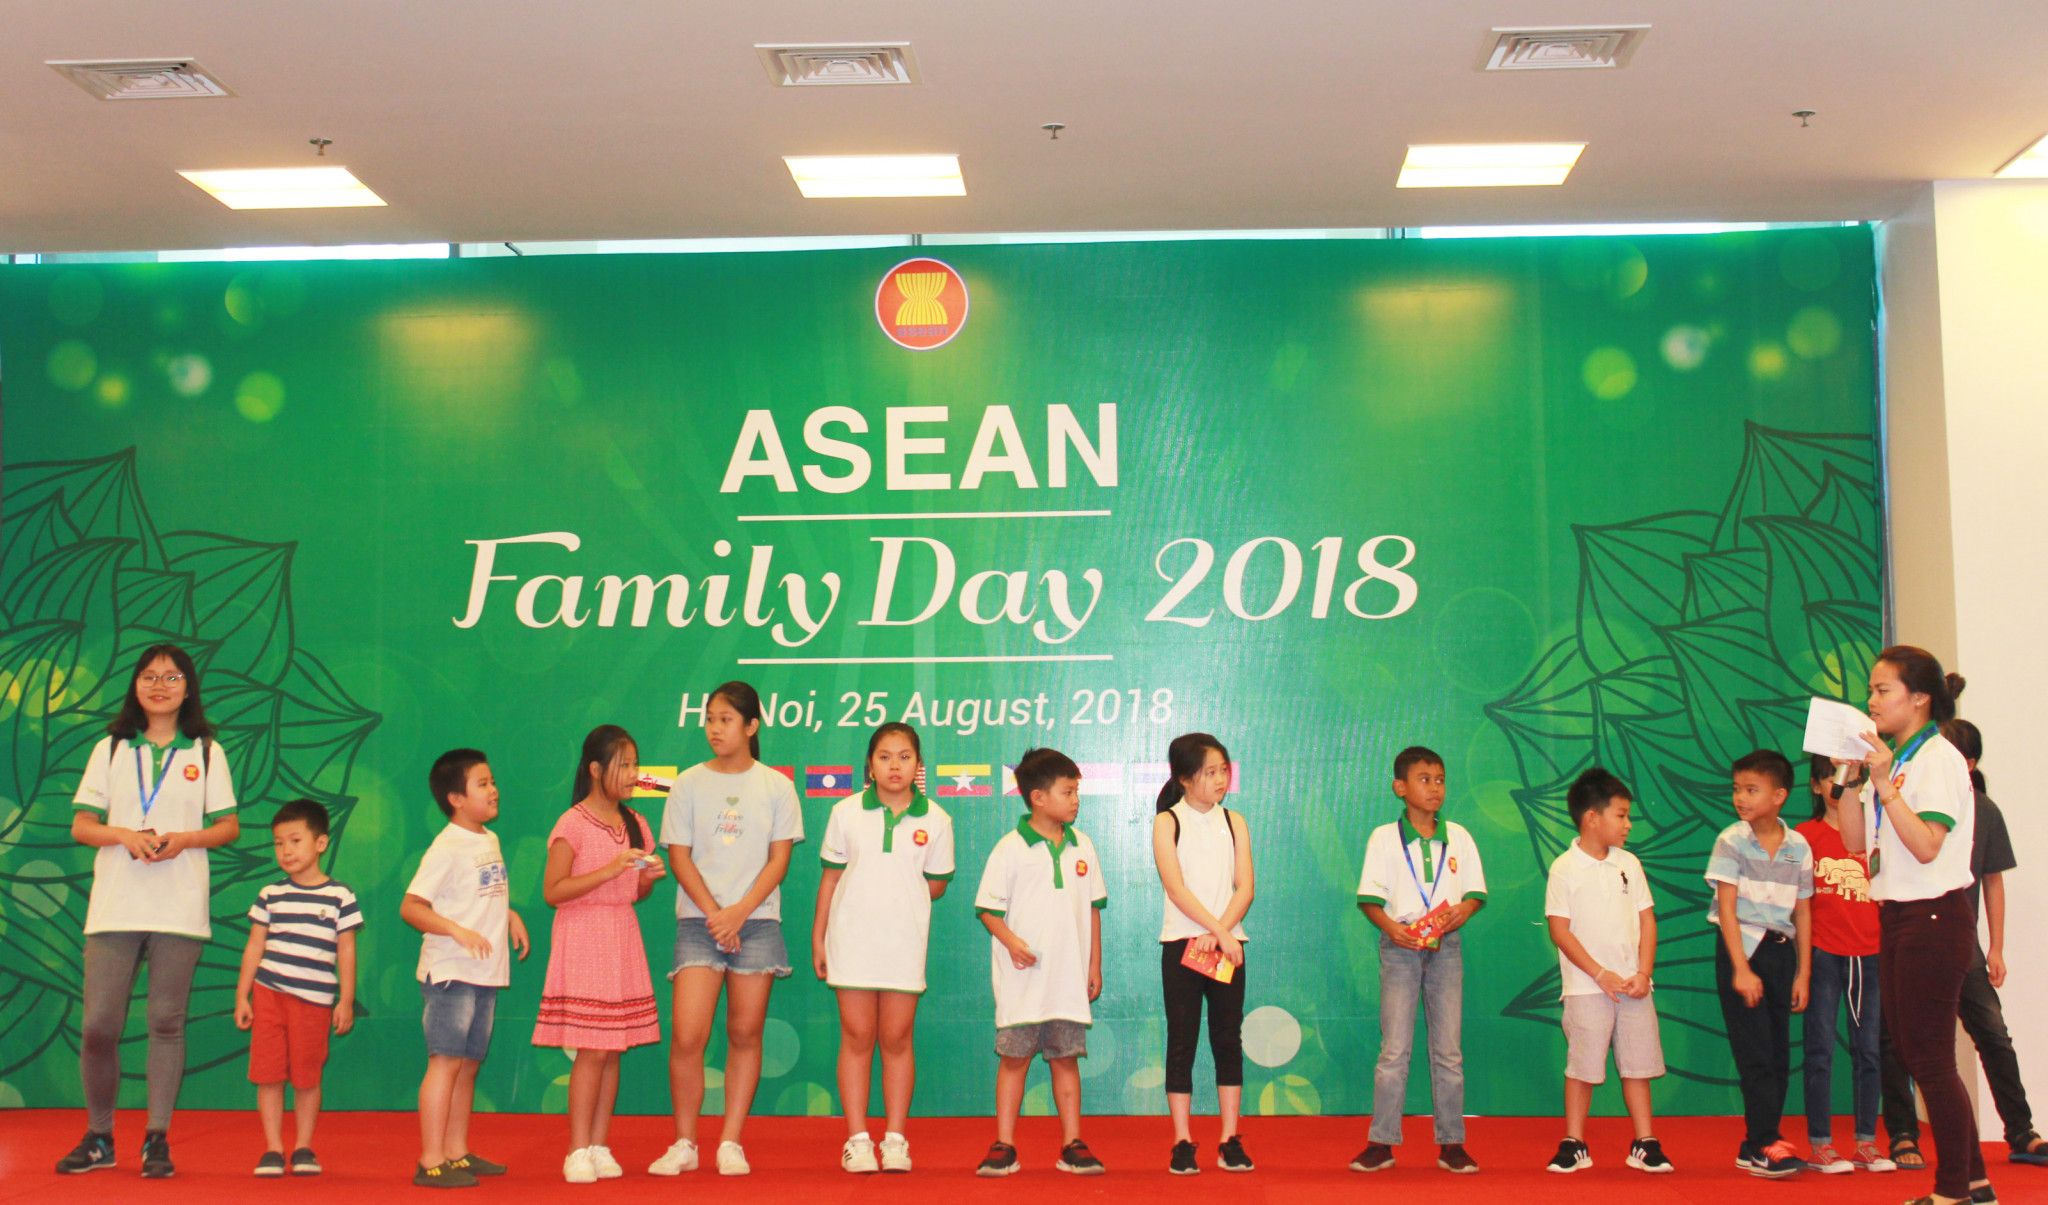 Màn thi hiểu biết kiến thức mang tên “Đại sứ ASEAN tương lai” được các bạn nhỏ hưởng ứng nhiệt liệt, thể hiện sự hiểu biết năng động cũng như mong ước của thế hệ trẻ ASEAN về một Cộng đồng ASEAN hoà bình, thịnh vượng, phát triển sáng tạo và bền vững. 